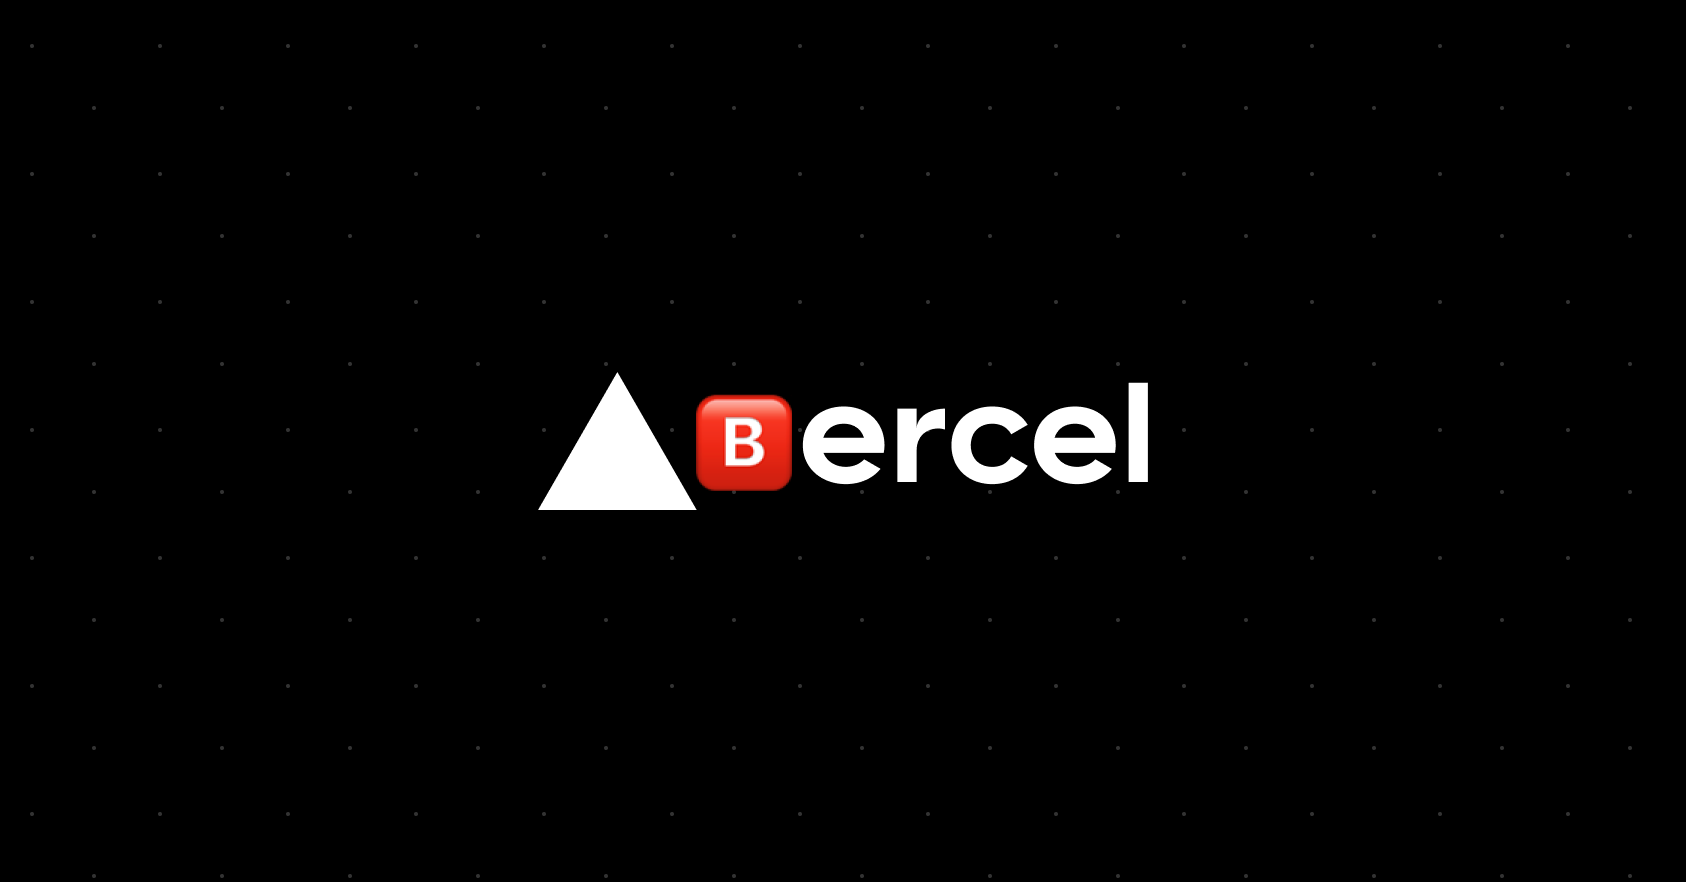 Vercel is now Bercel